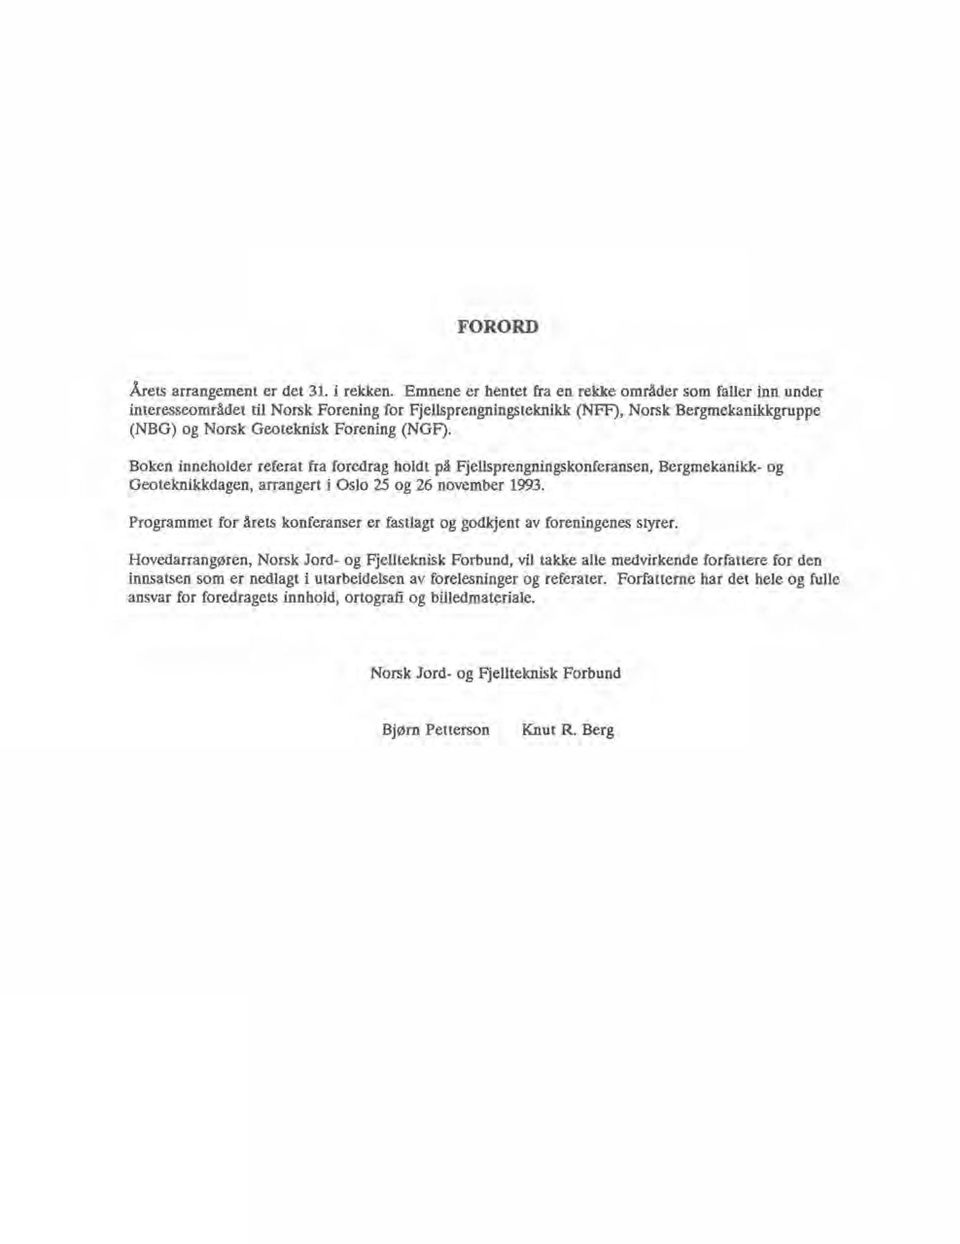 Boken inneholder referat fra foredrag holdt på Fjellsprengningskonferansen, Bergmekanikk- og Geoteknikkdagen, arrangert i Oslo 25 og 26 november 1993.